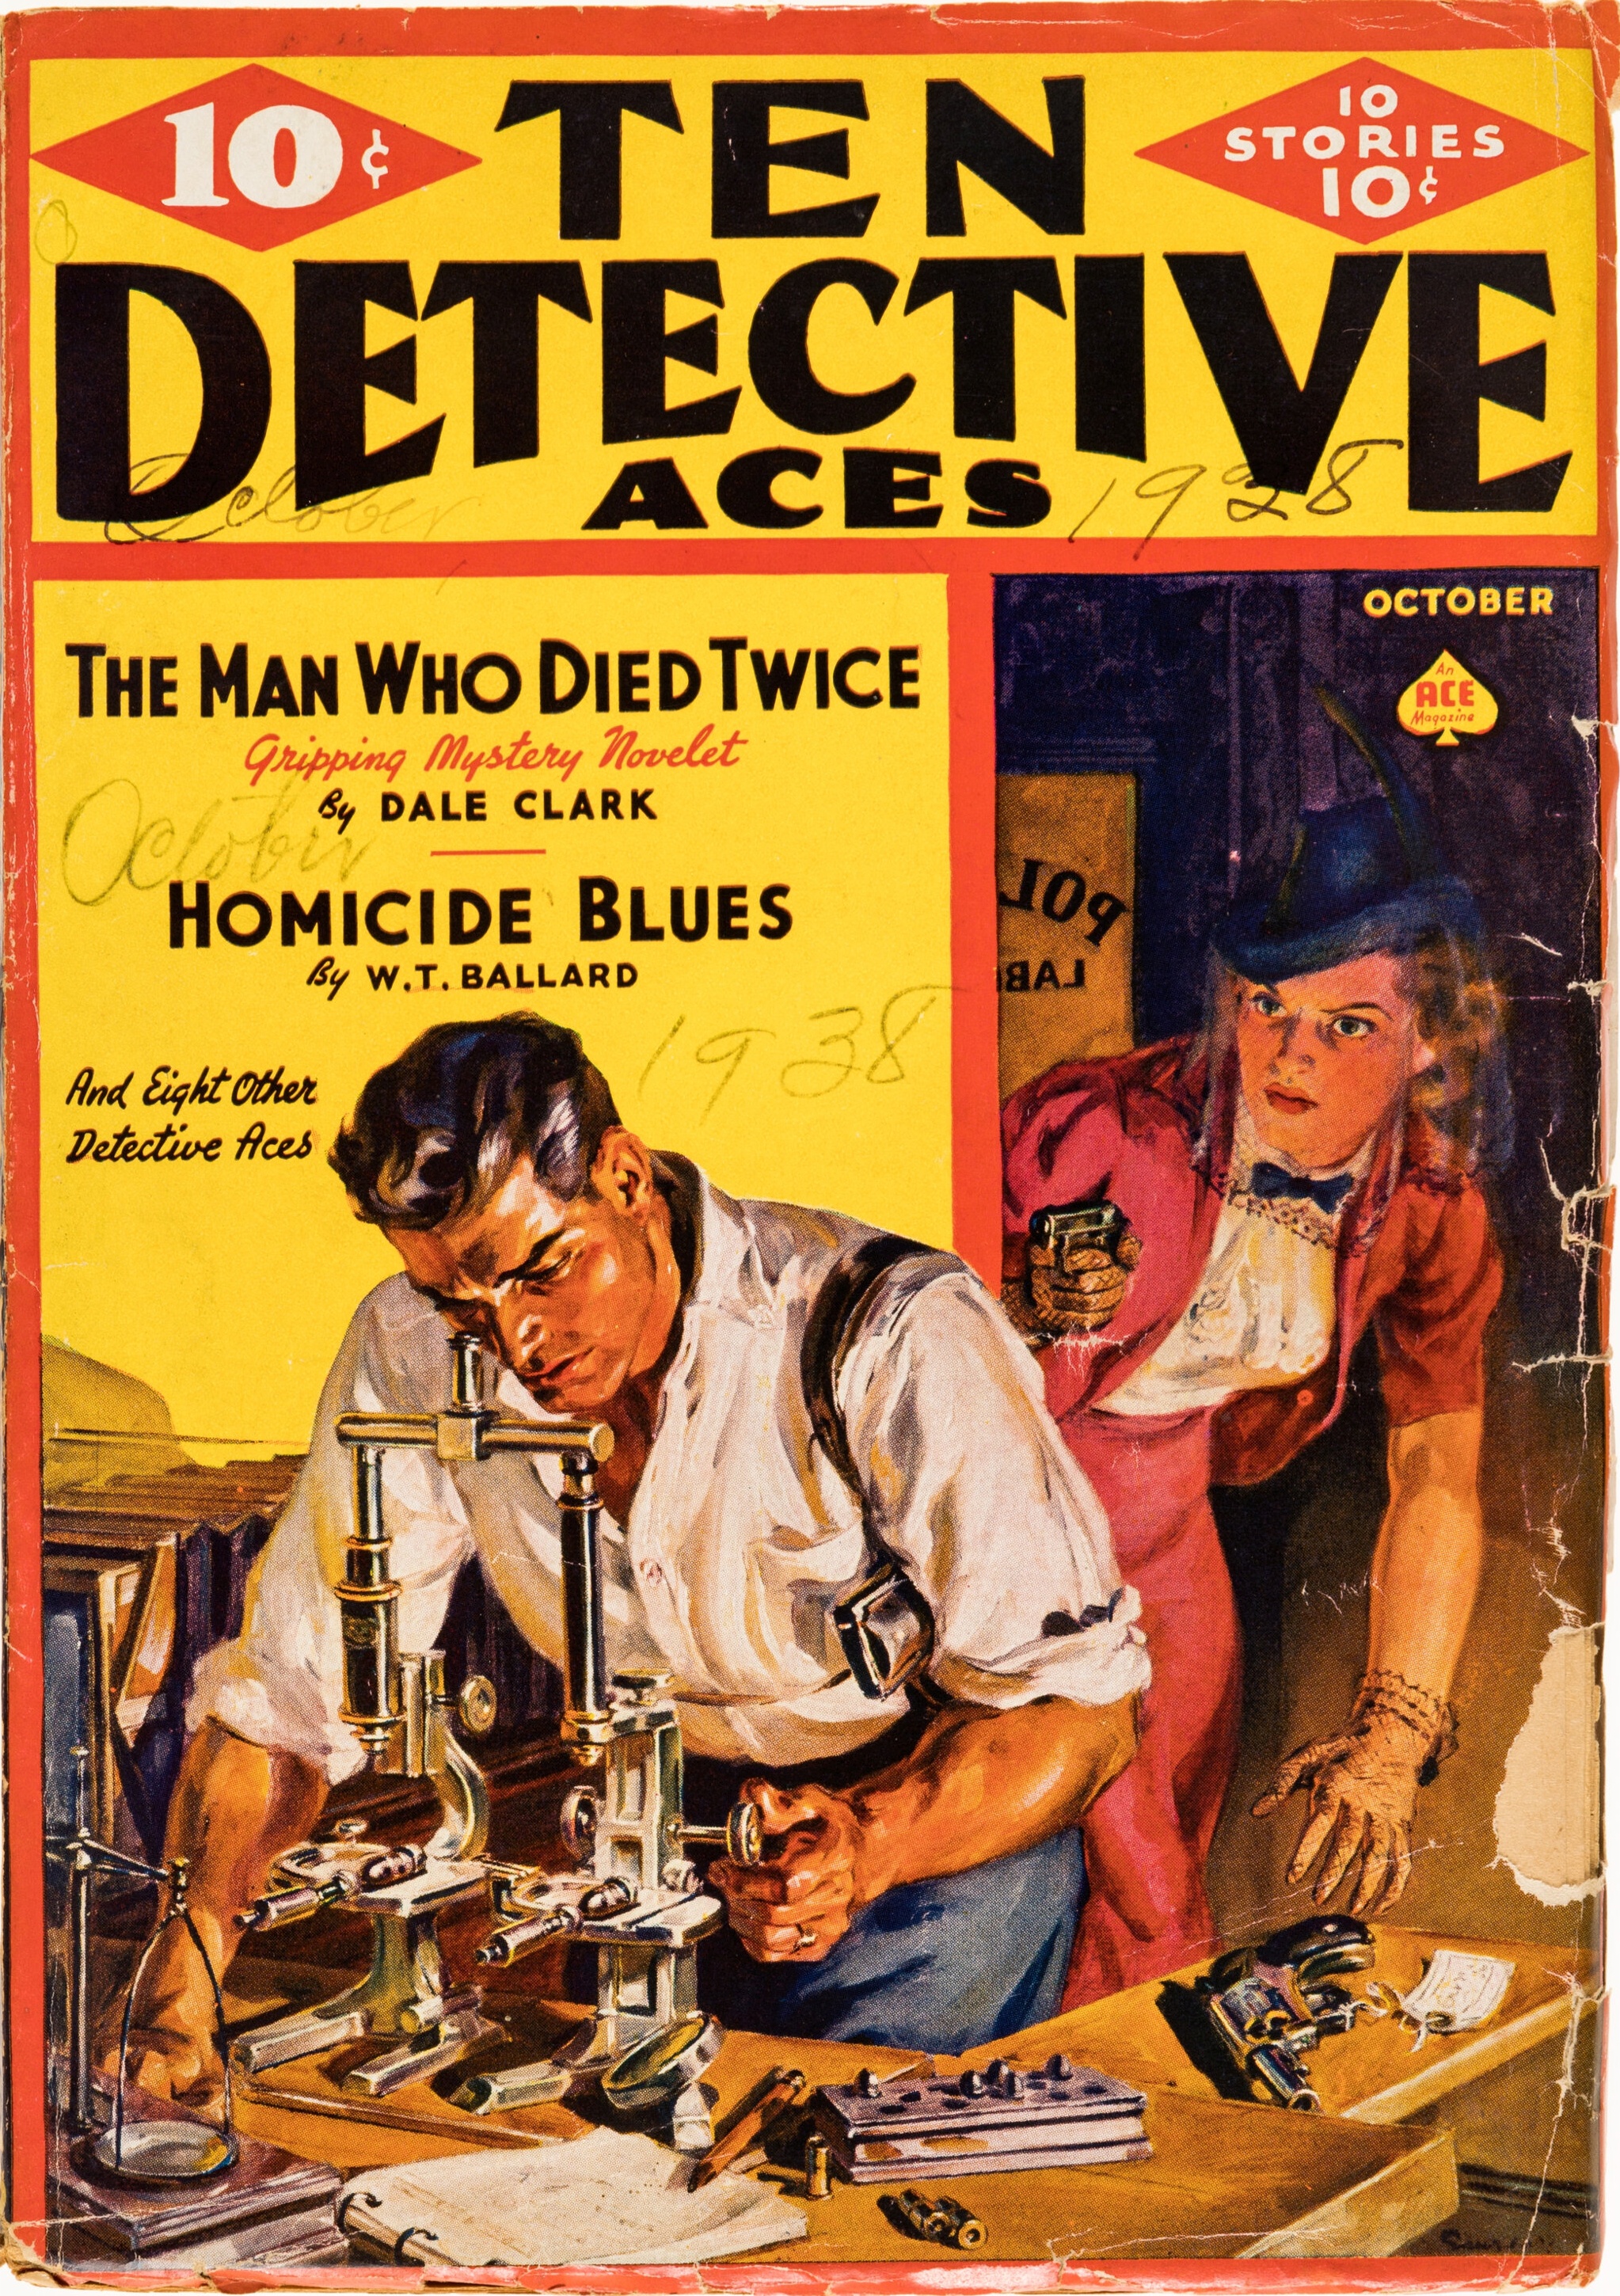 Ten Detective Aces - October 1938